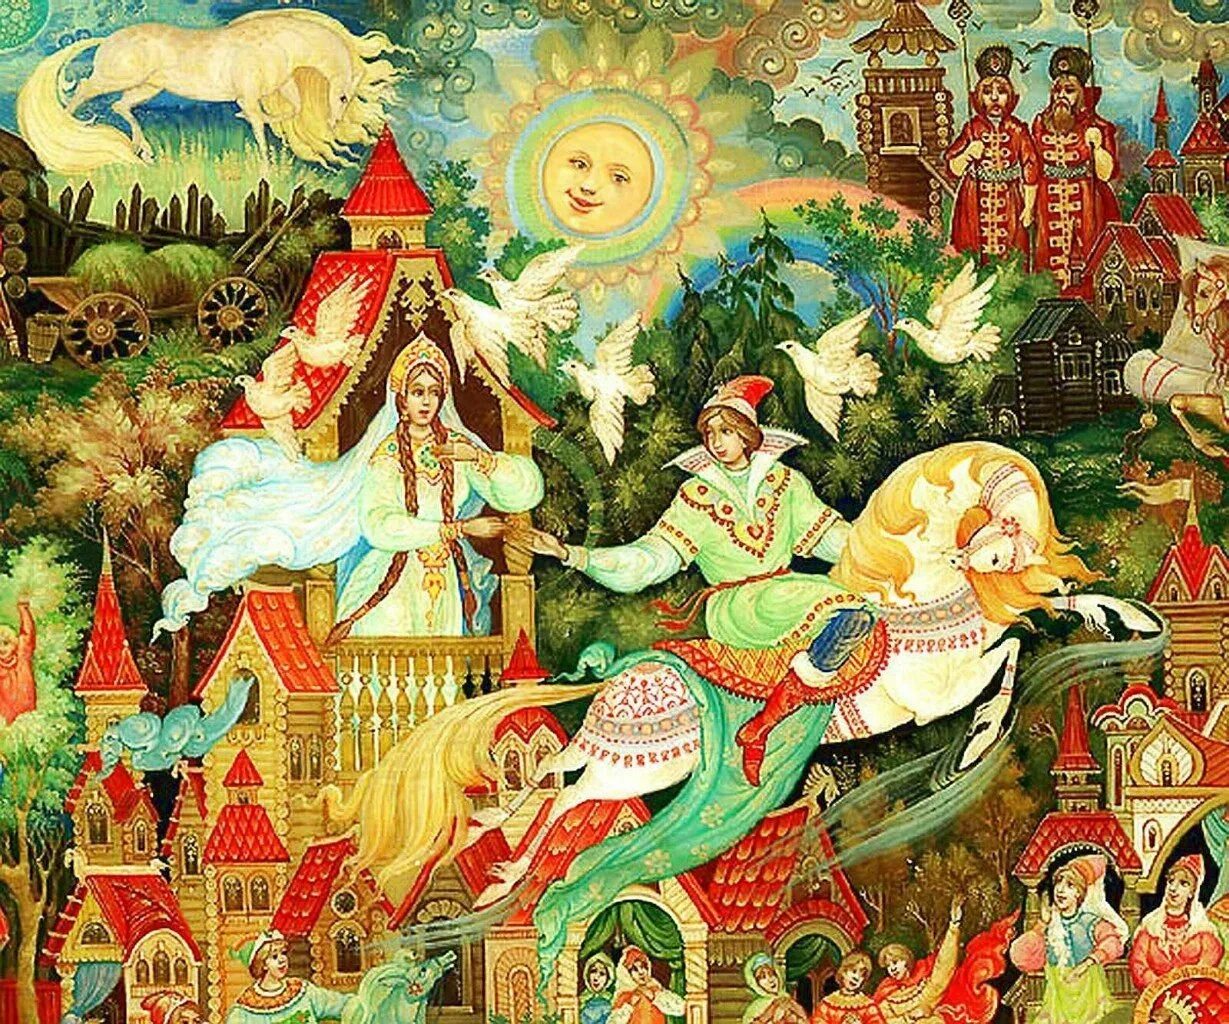 Русские сказки. Русский стиль иллюстрации. Русские народные сказказки. Иллюстрации к сказкам.